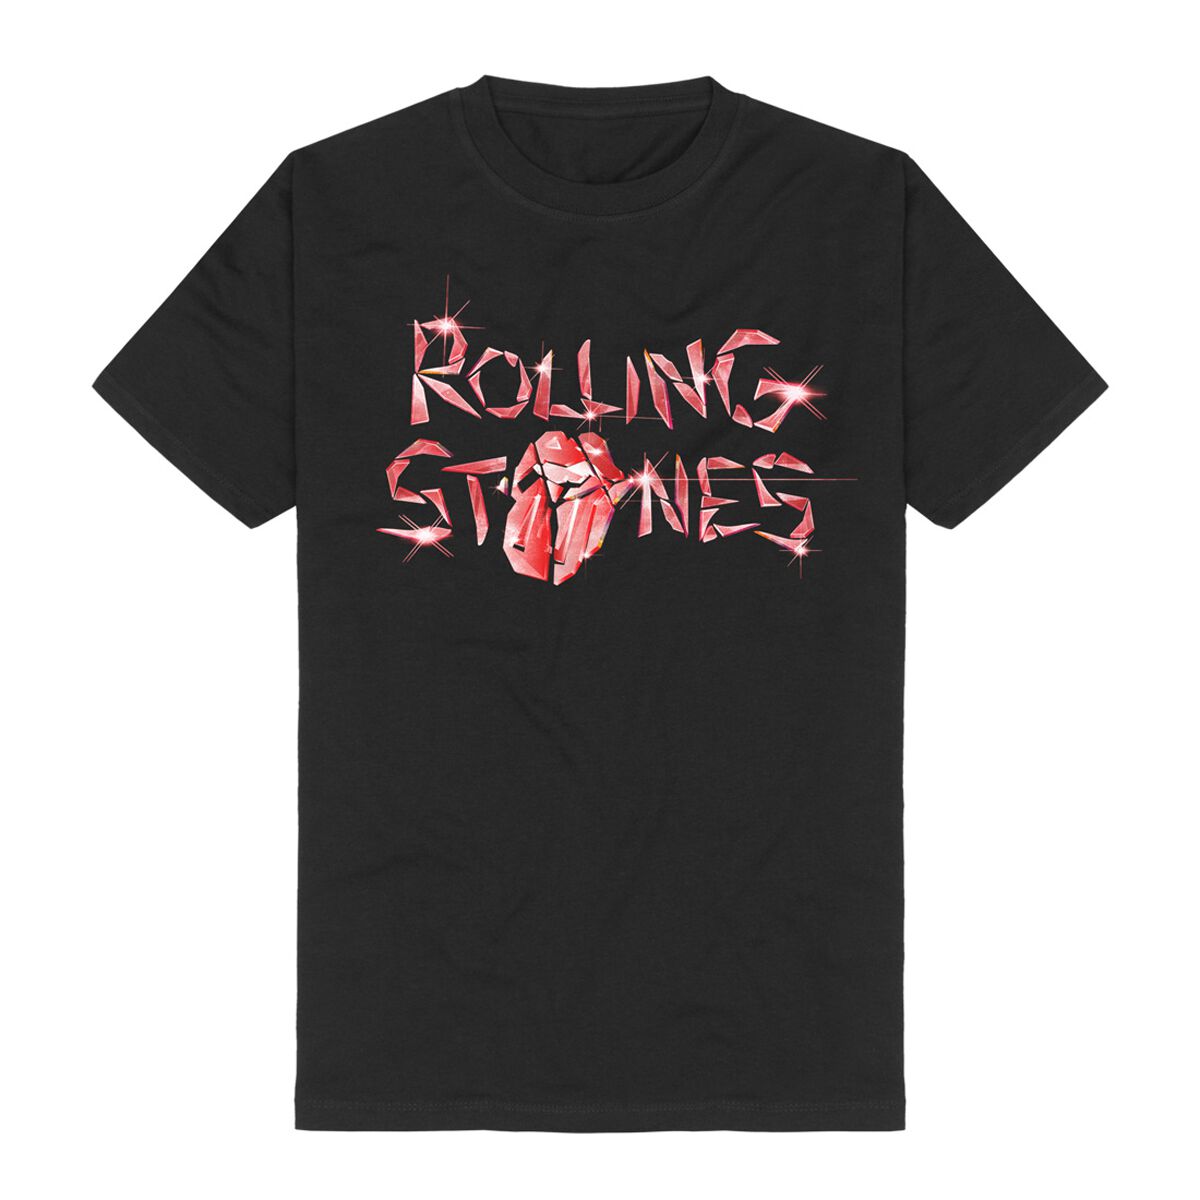 The Rolling Stones T-Shirt - Hackney Diamonds Glass Logo - S bis 5XL - für Männer - Größe 5XL - schwarz  - Lizenziertes Merchandise!